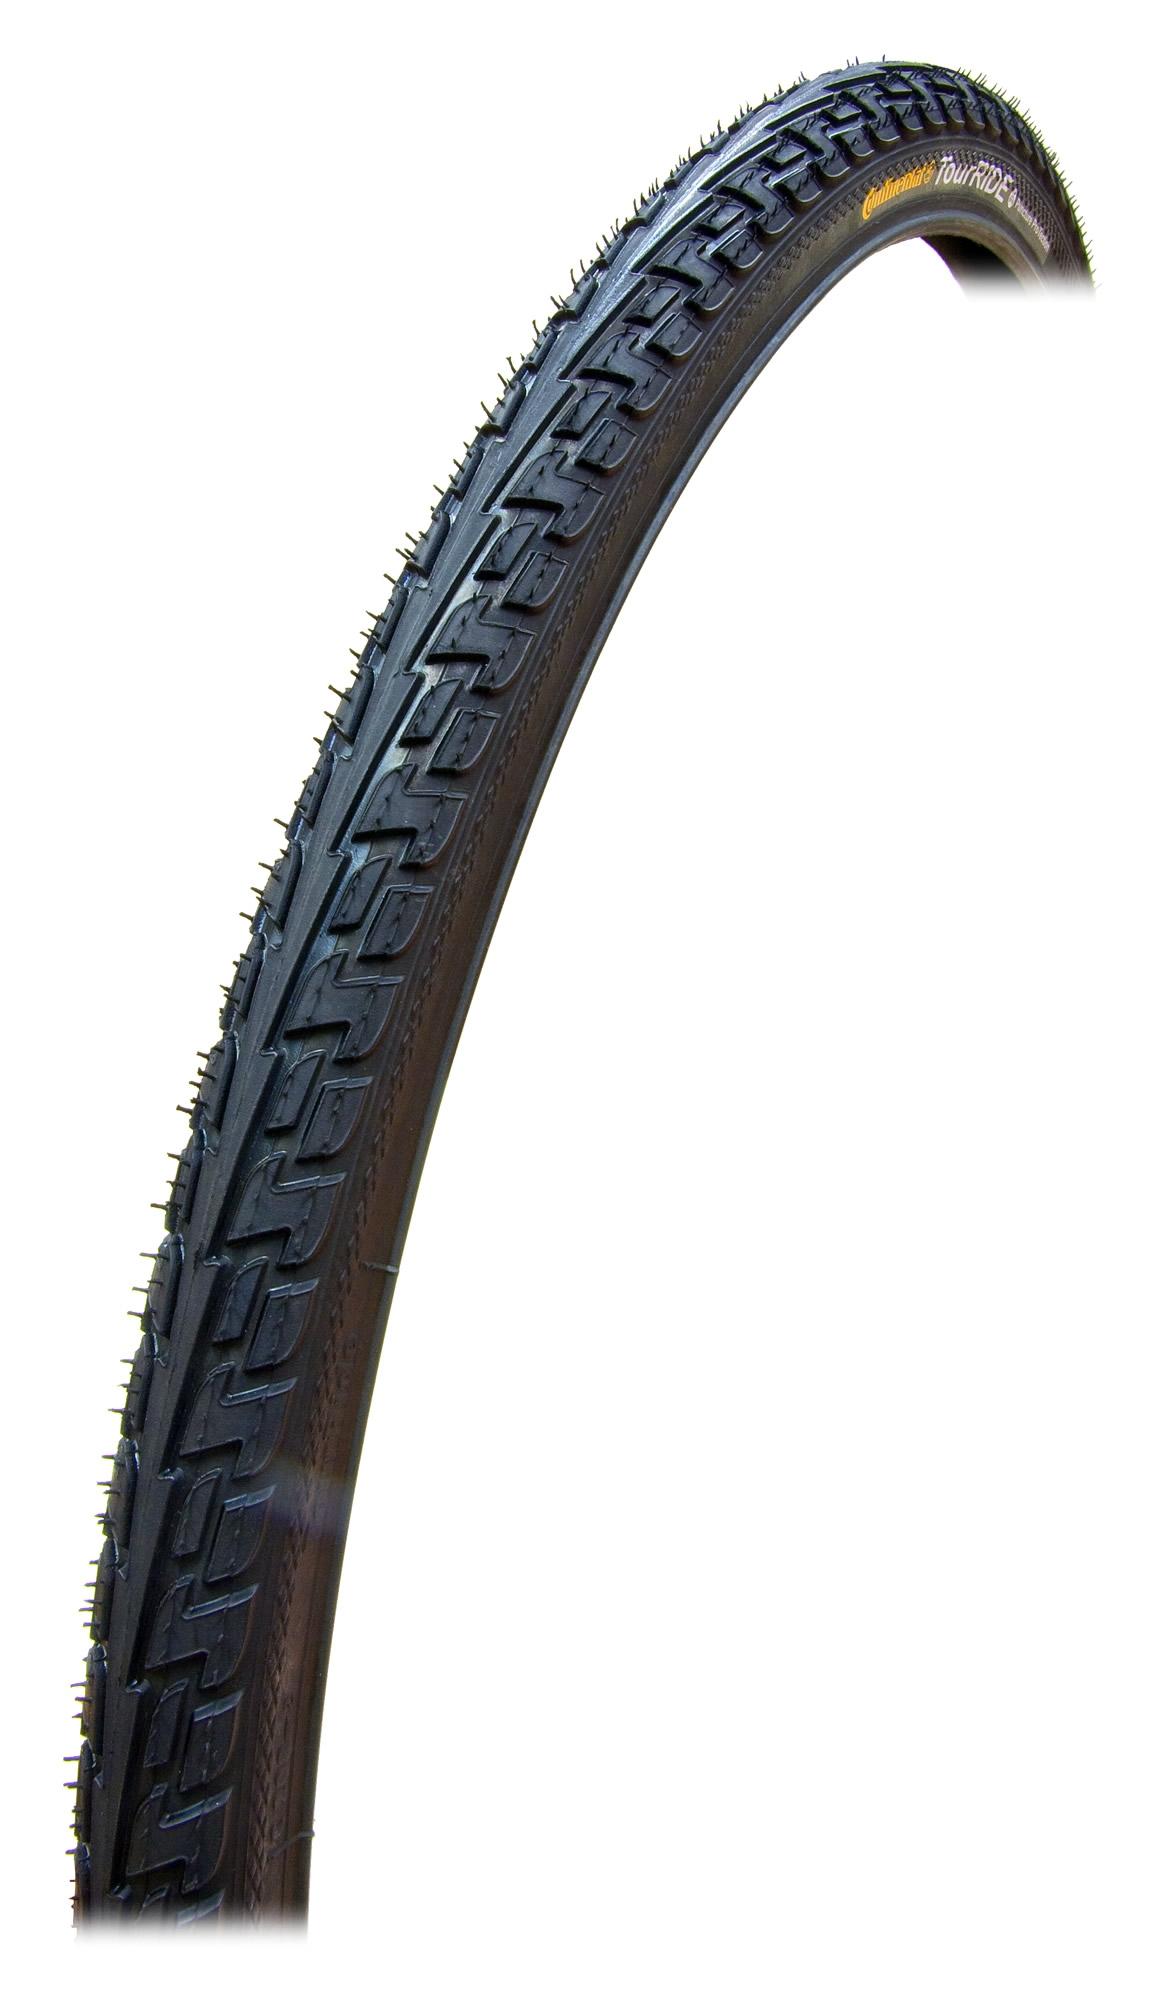 28 inch bike tires